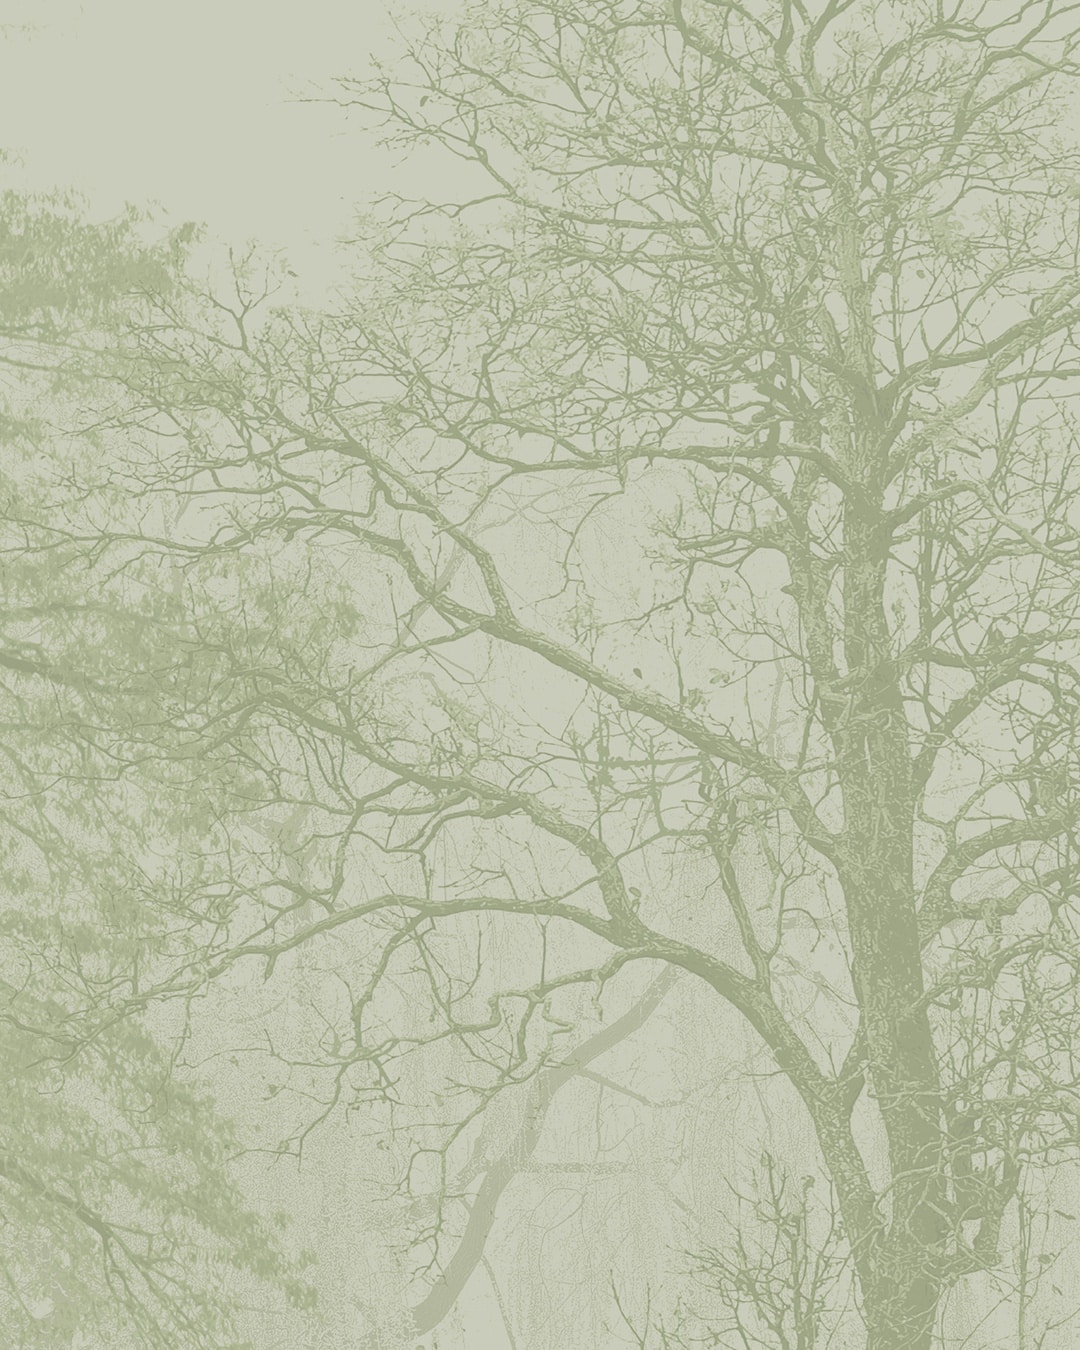 Papier peint panoramique contemporain nature foret de grands arbres vert d'eau